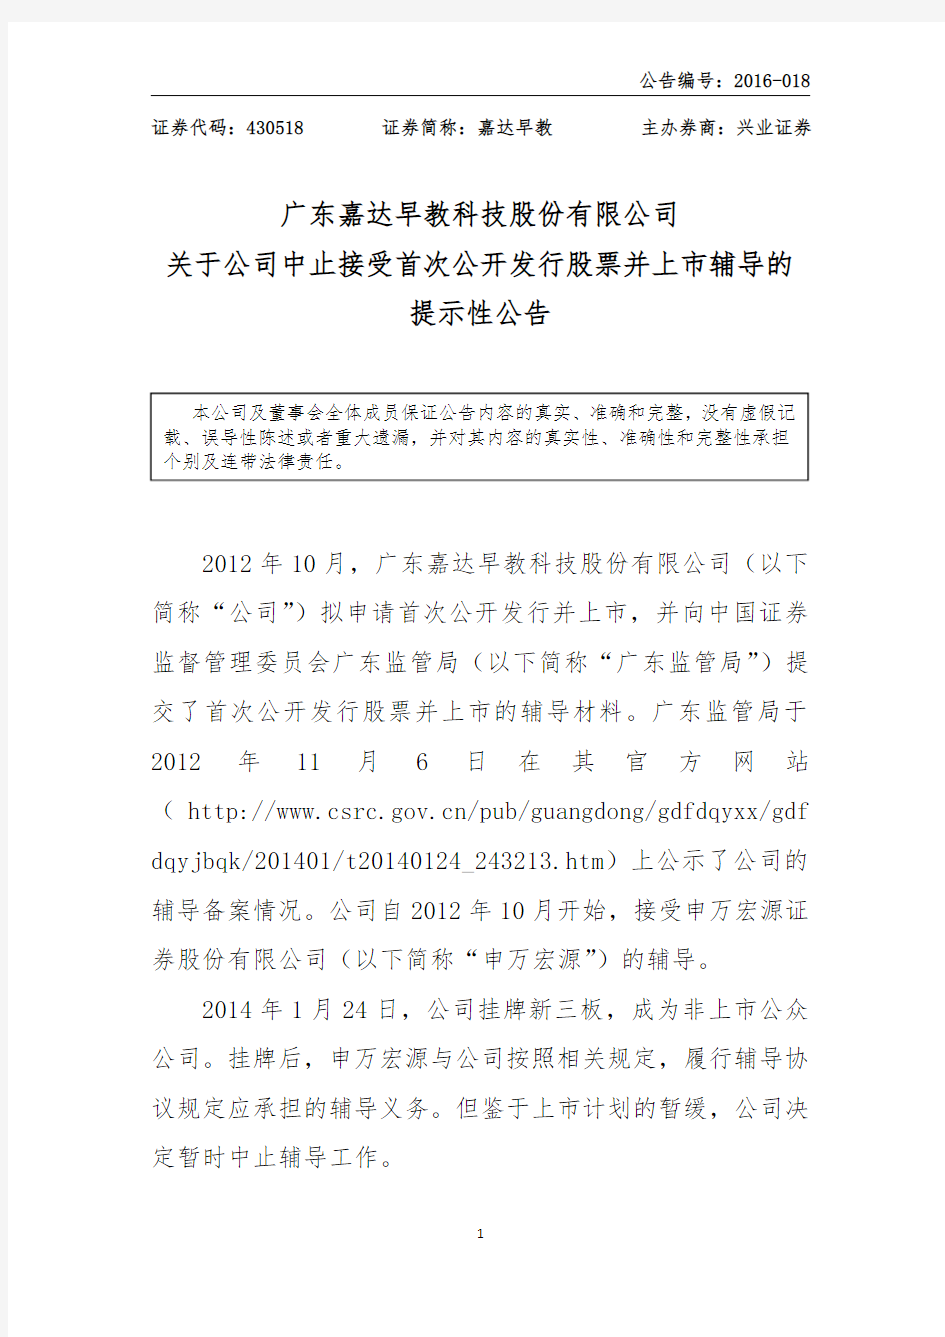 广东嘉达早教科技股份有限公司 关于公司中止接受首次公开